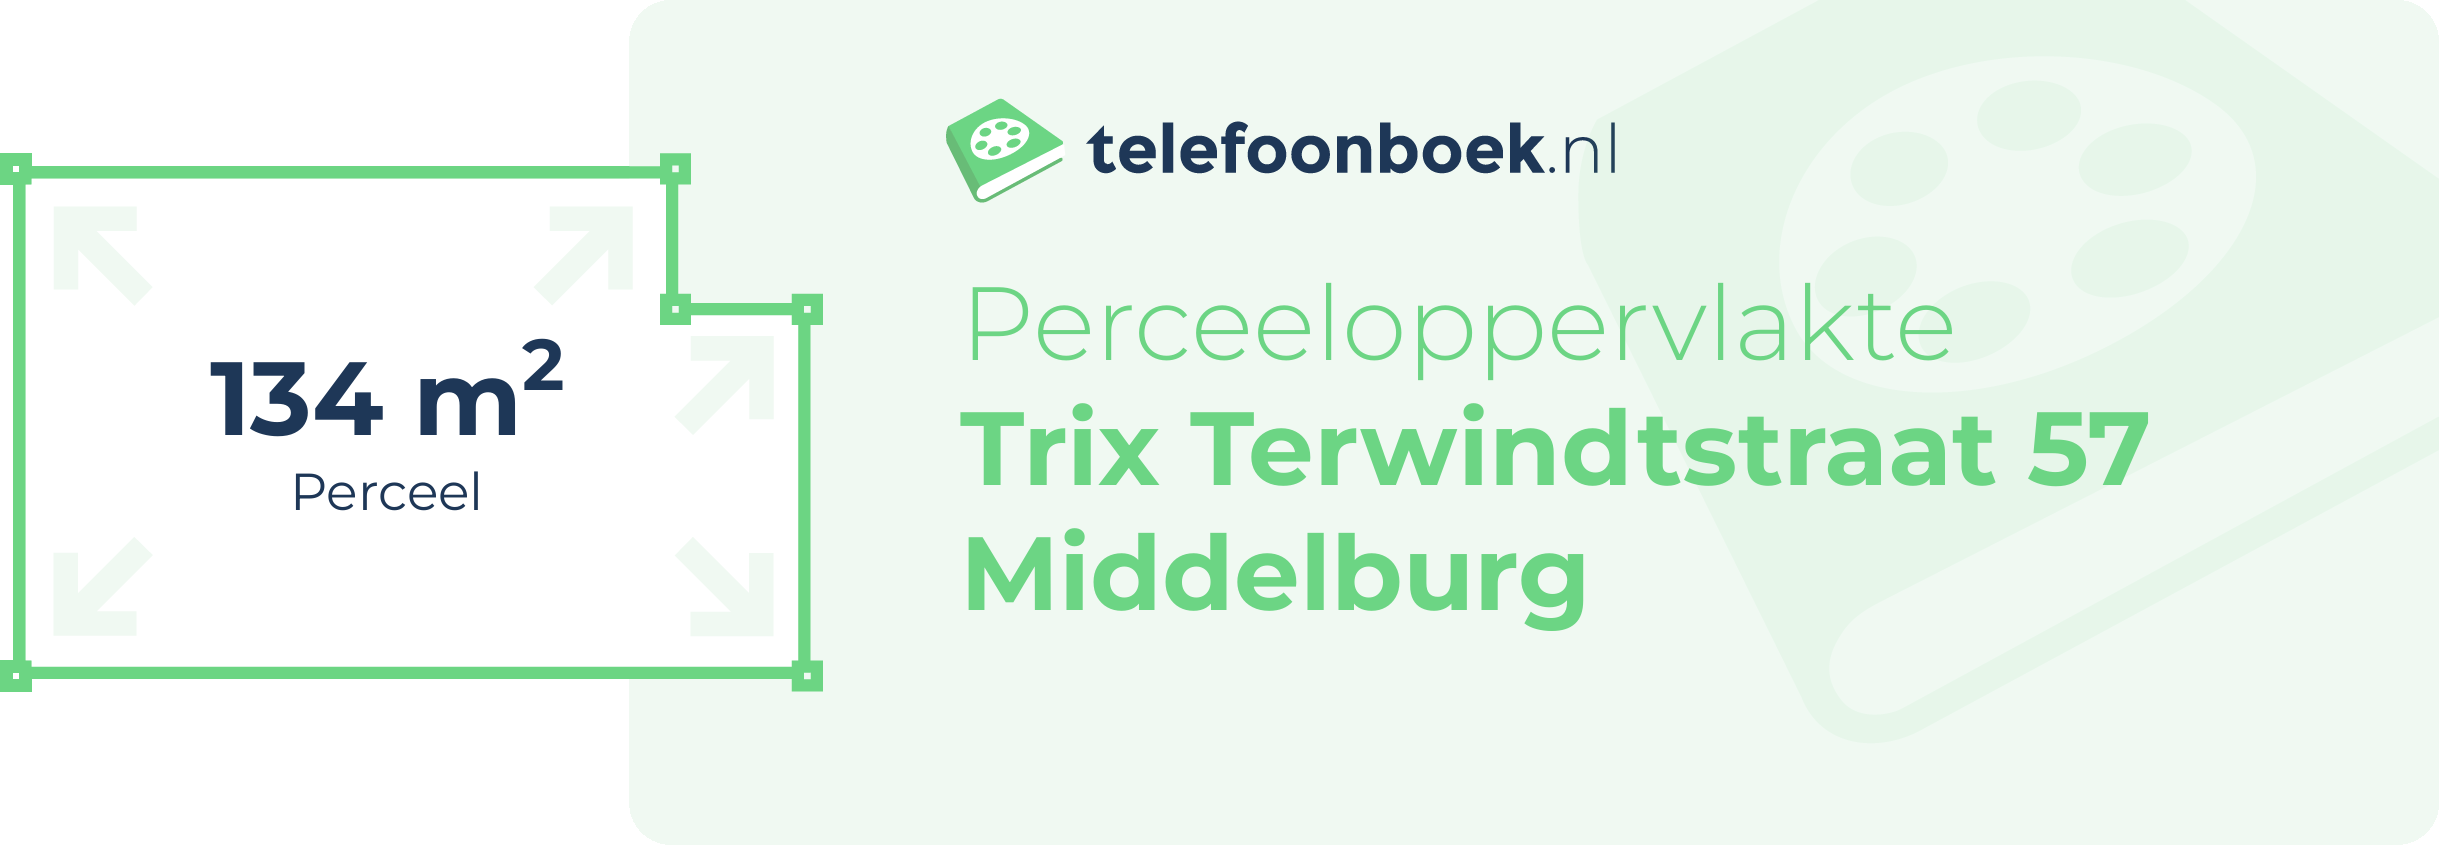 Perceeloppervlakte Trix Terwindtstraat 57 Middelburg